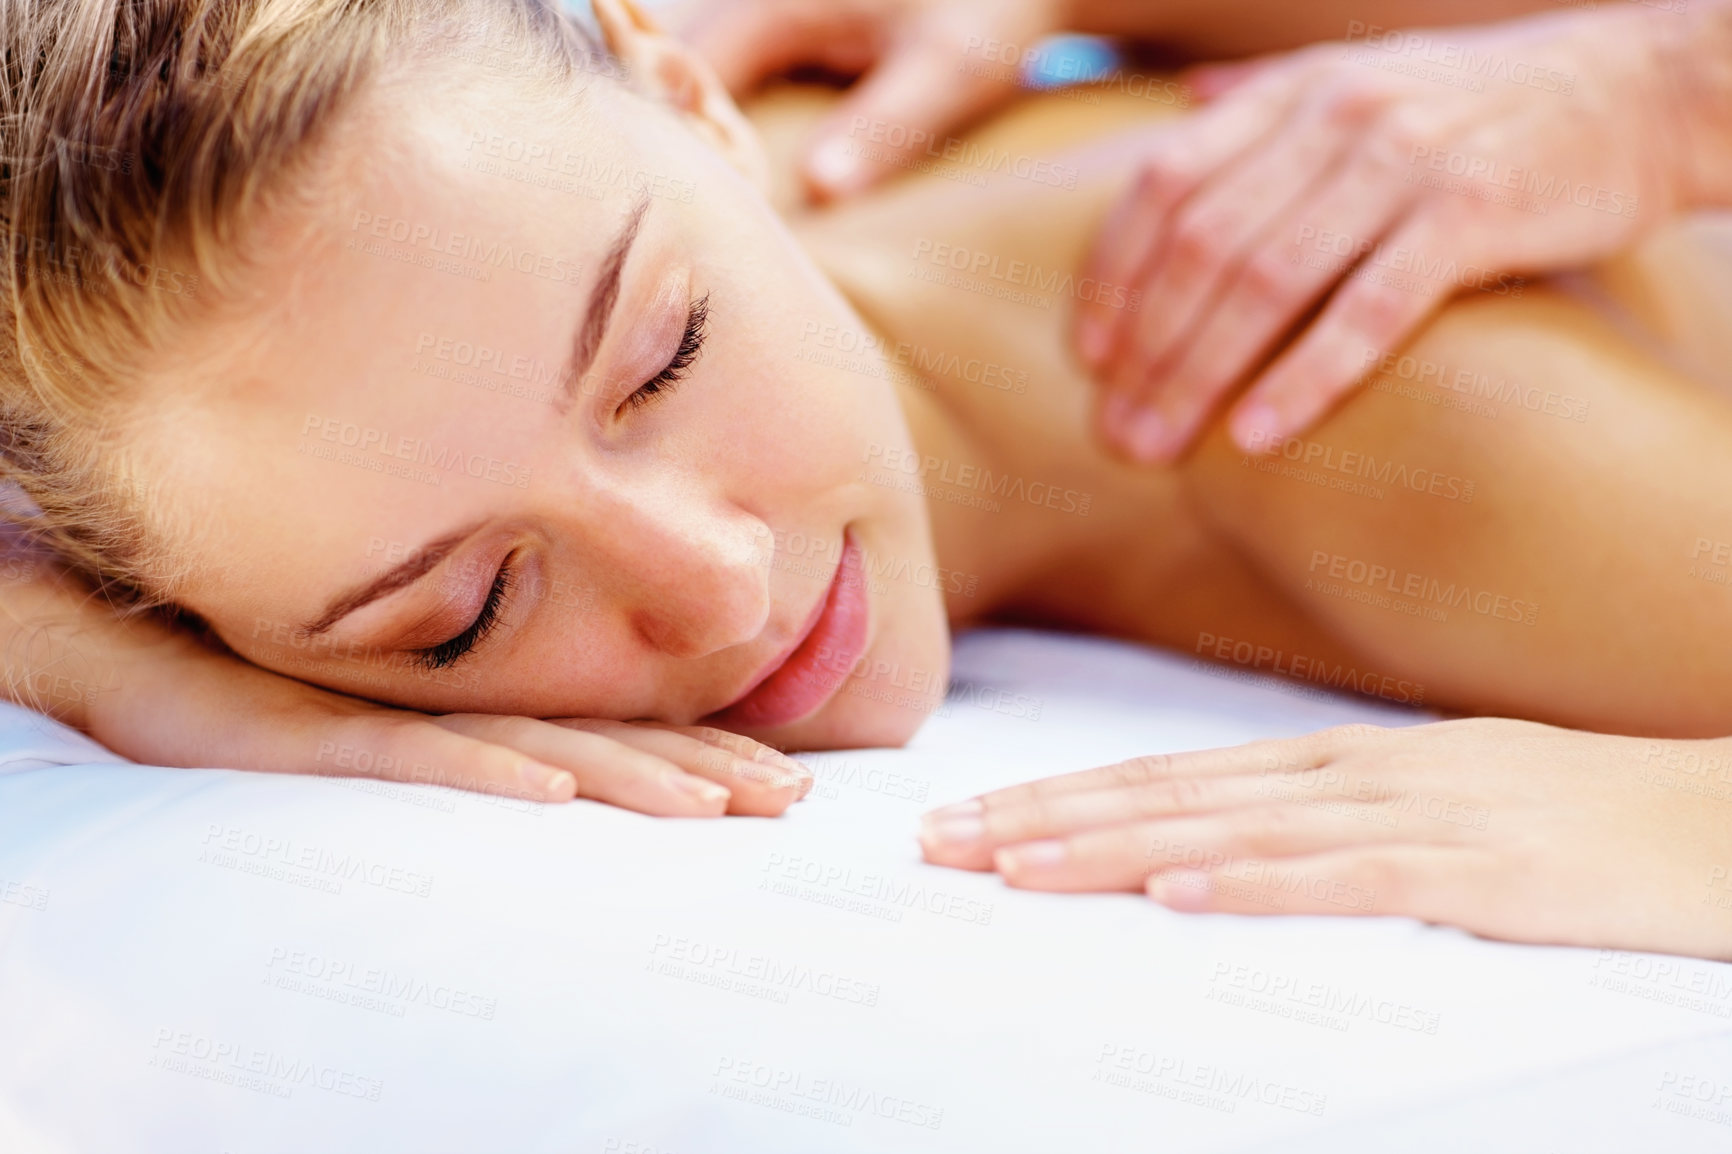 Massage 7. Телесно-ориентированная терапия. Телесная терапия. Релакс терапия. Massage.